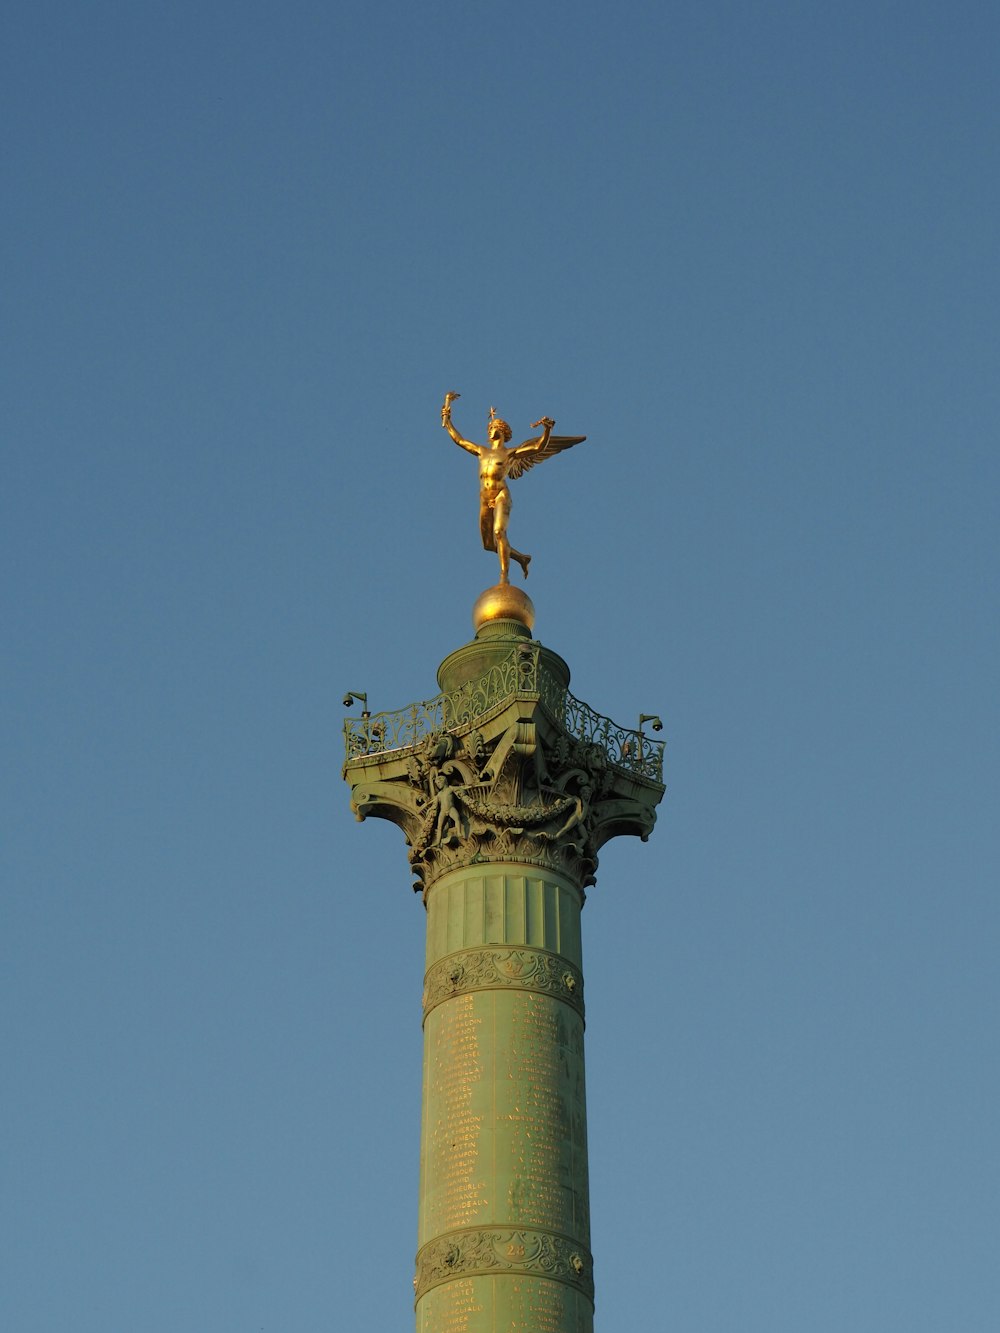 a golden statue on top of a green pillar